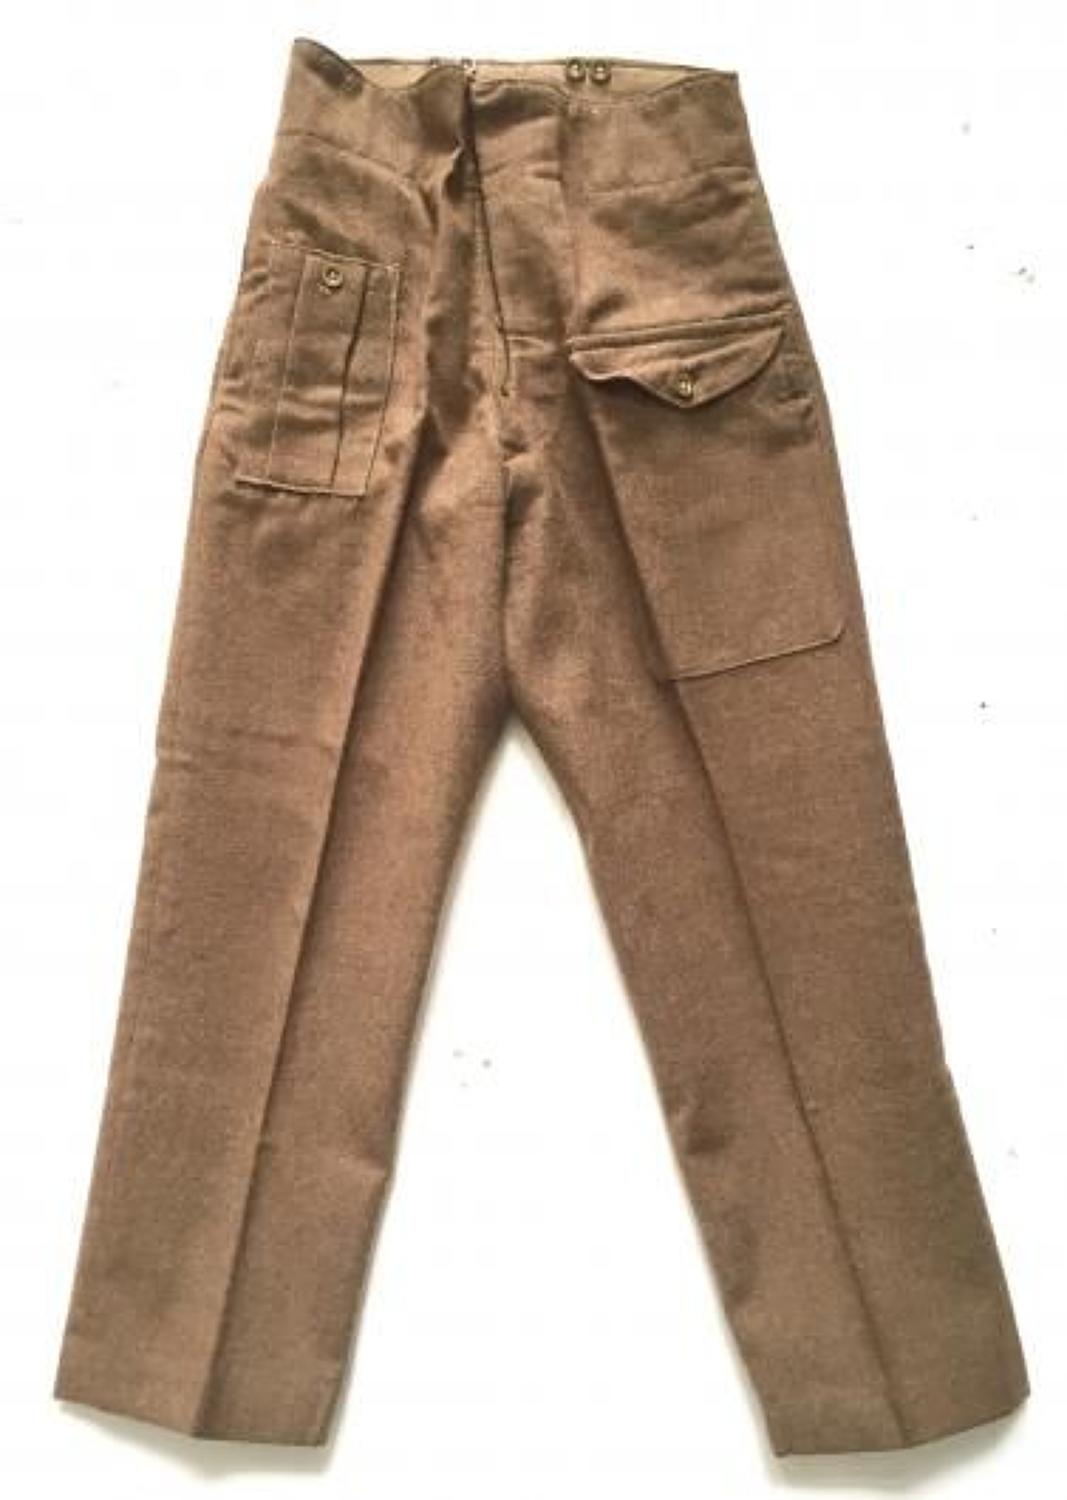 1946 Pattern British Army Battledress Trousers.